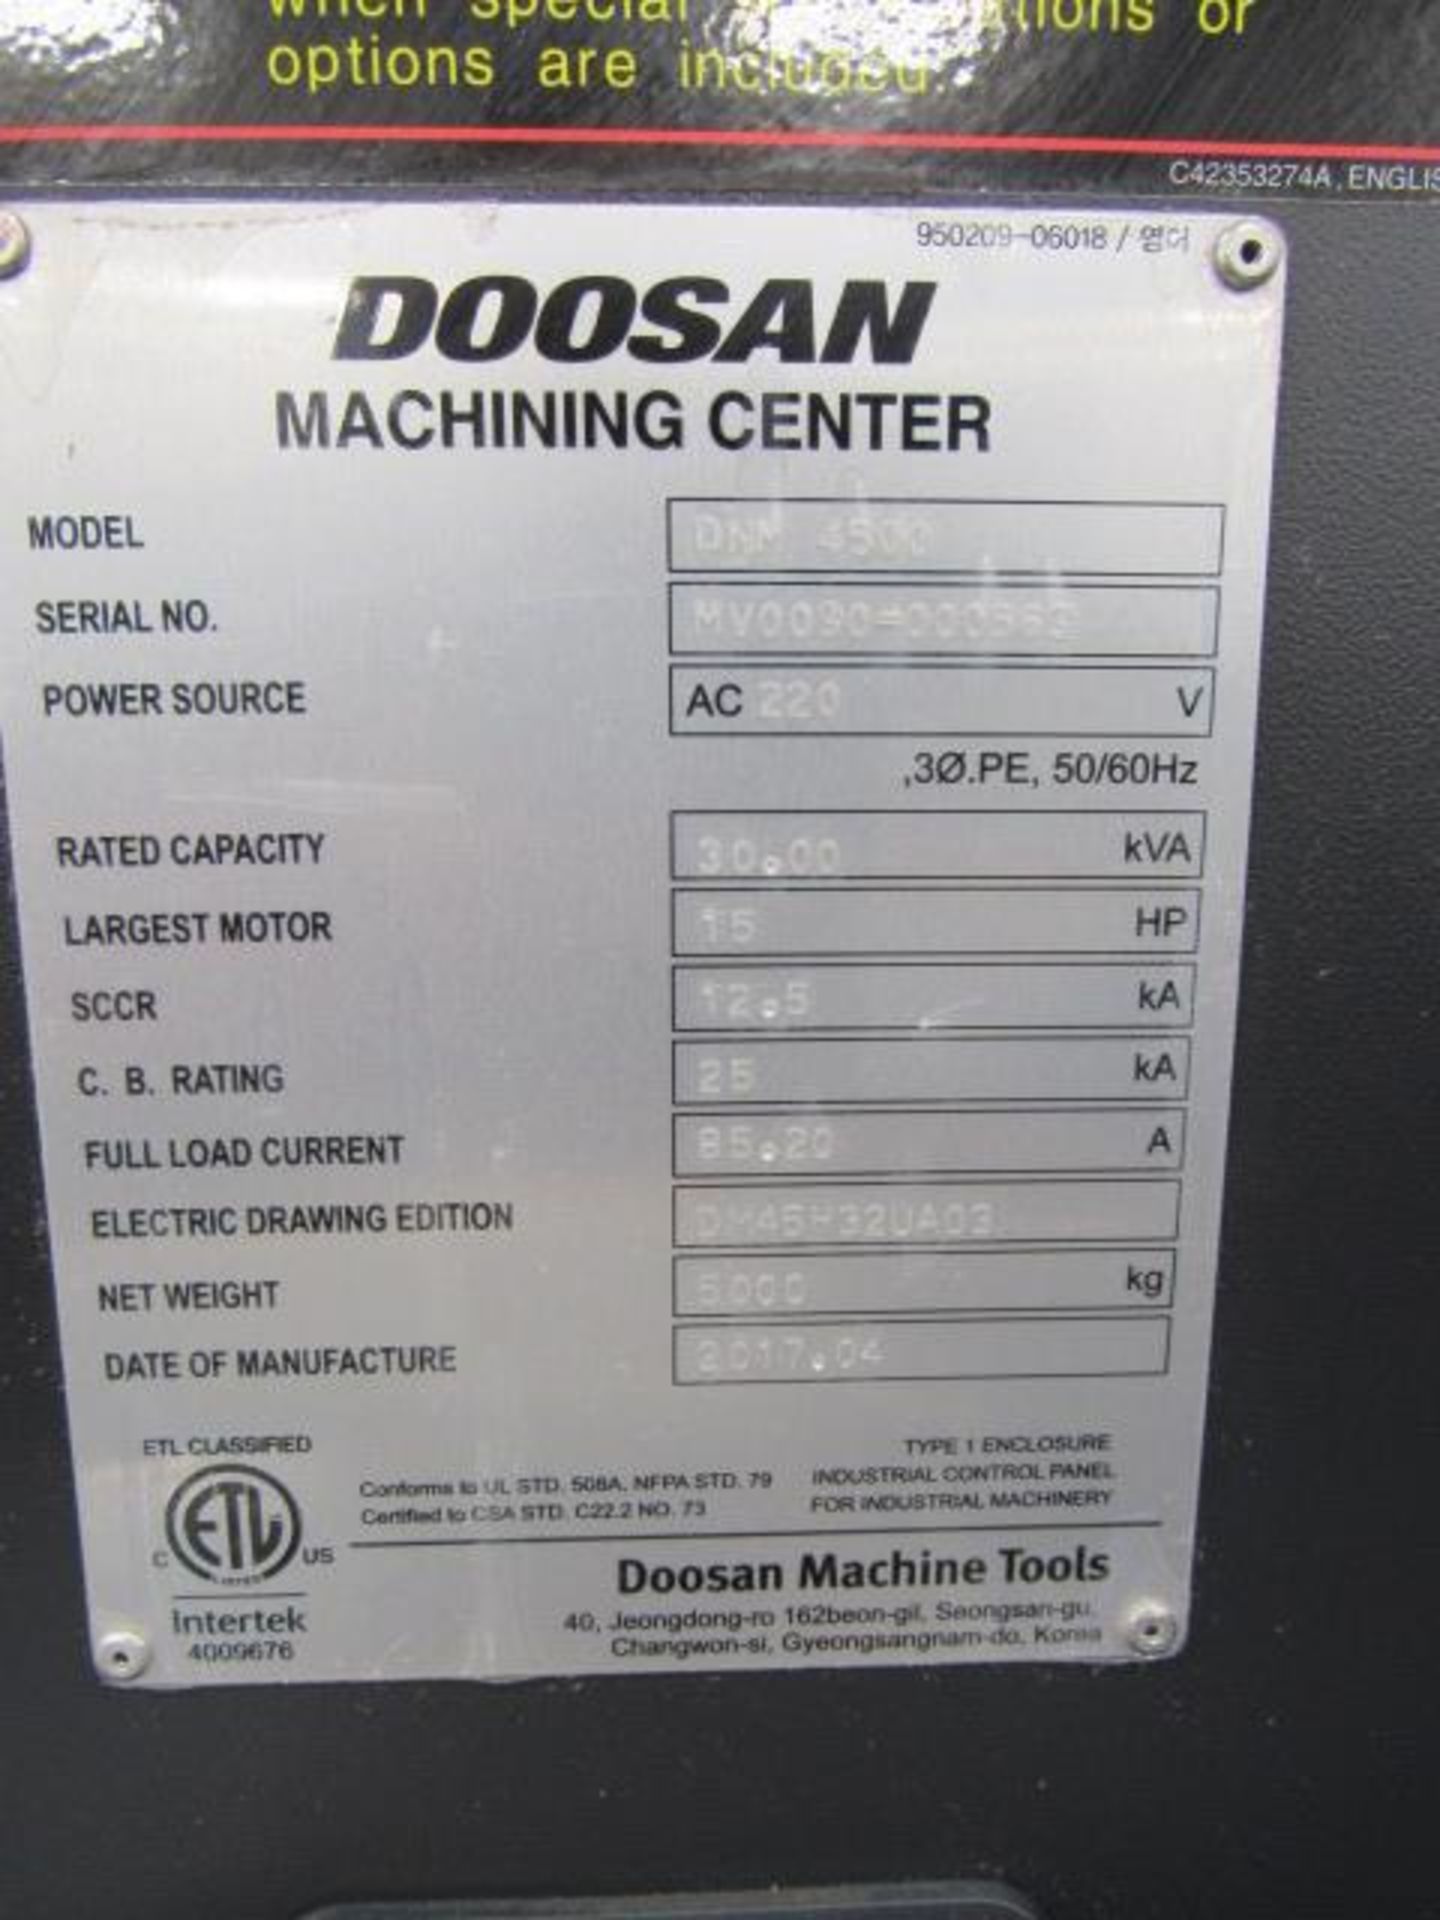 Doosan DNM 4500 CNC Vertical Machining Center with 39.4'' x 17.7'' Tables, Big Plus #40, Spindle - Bild 7 aus 8